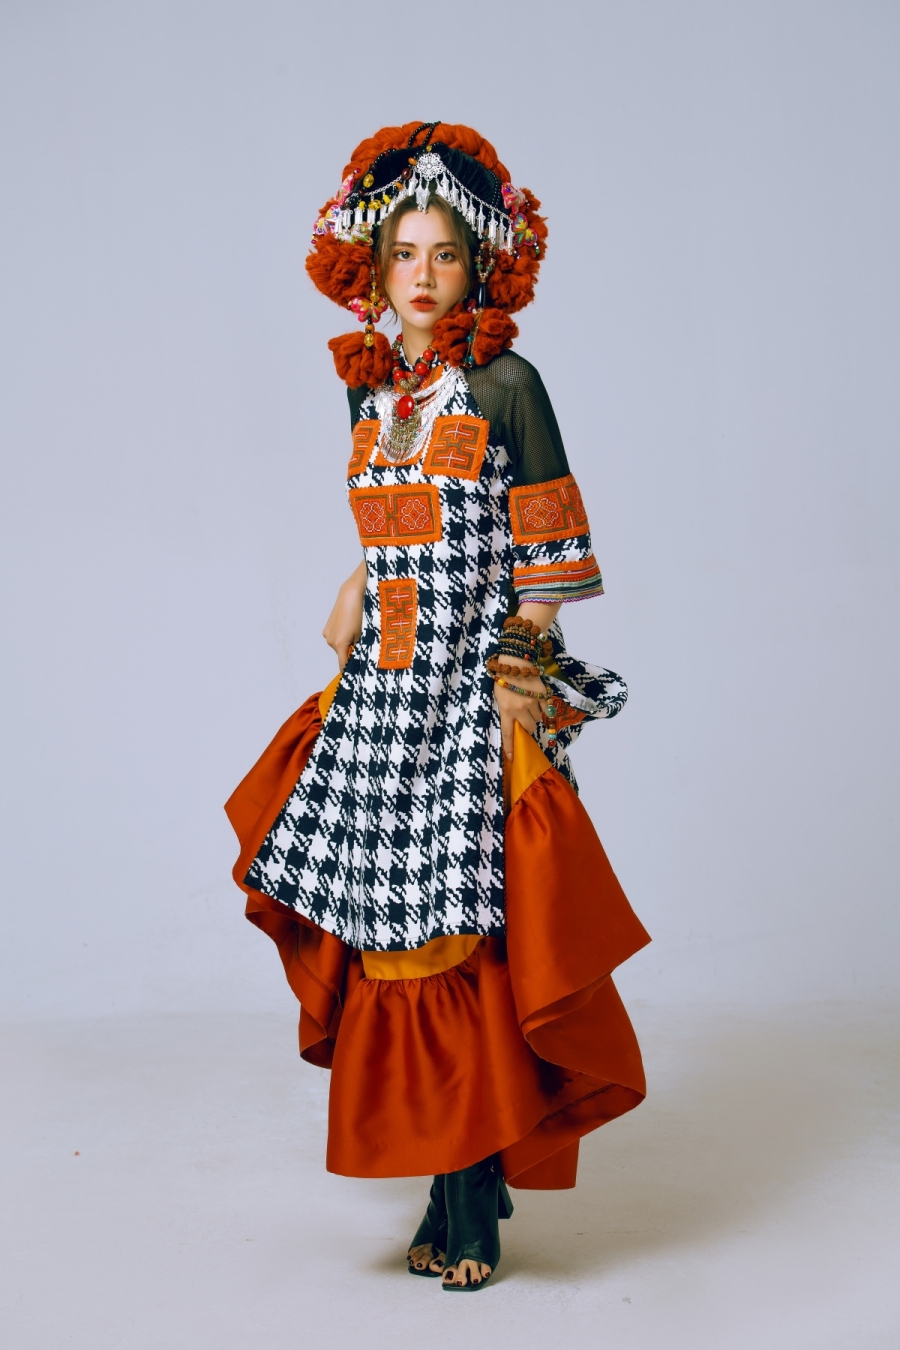 Huyền Lizzie diện trang phục dân tộc, netizen trầm trồ 'cân mọi style', rần rần thả tim - Ảnh 2